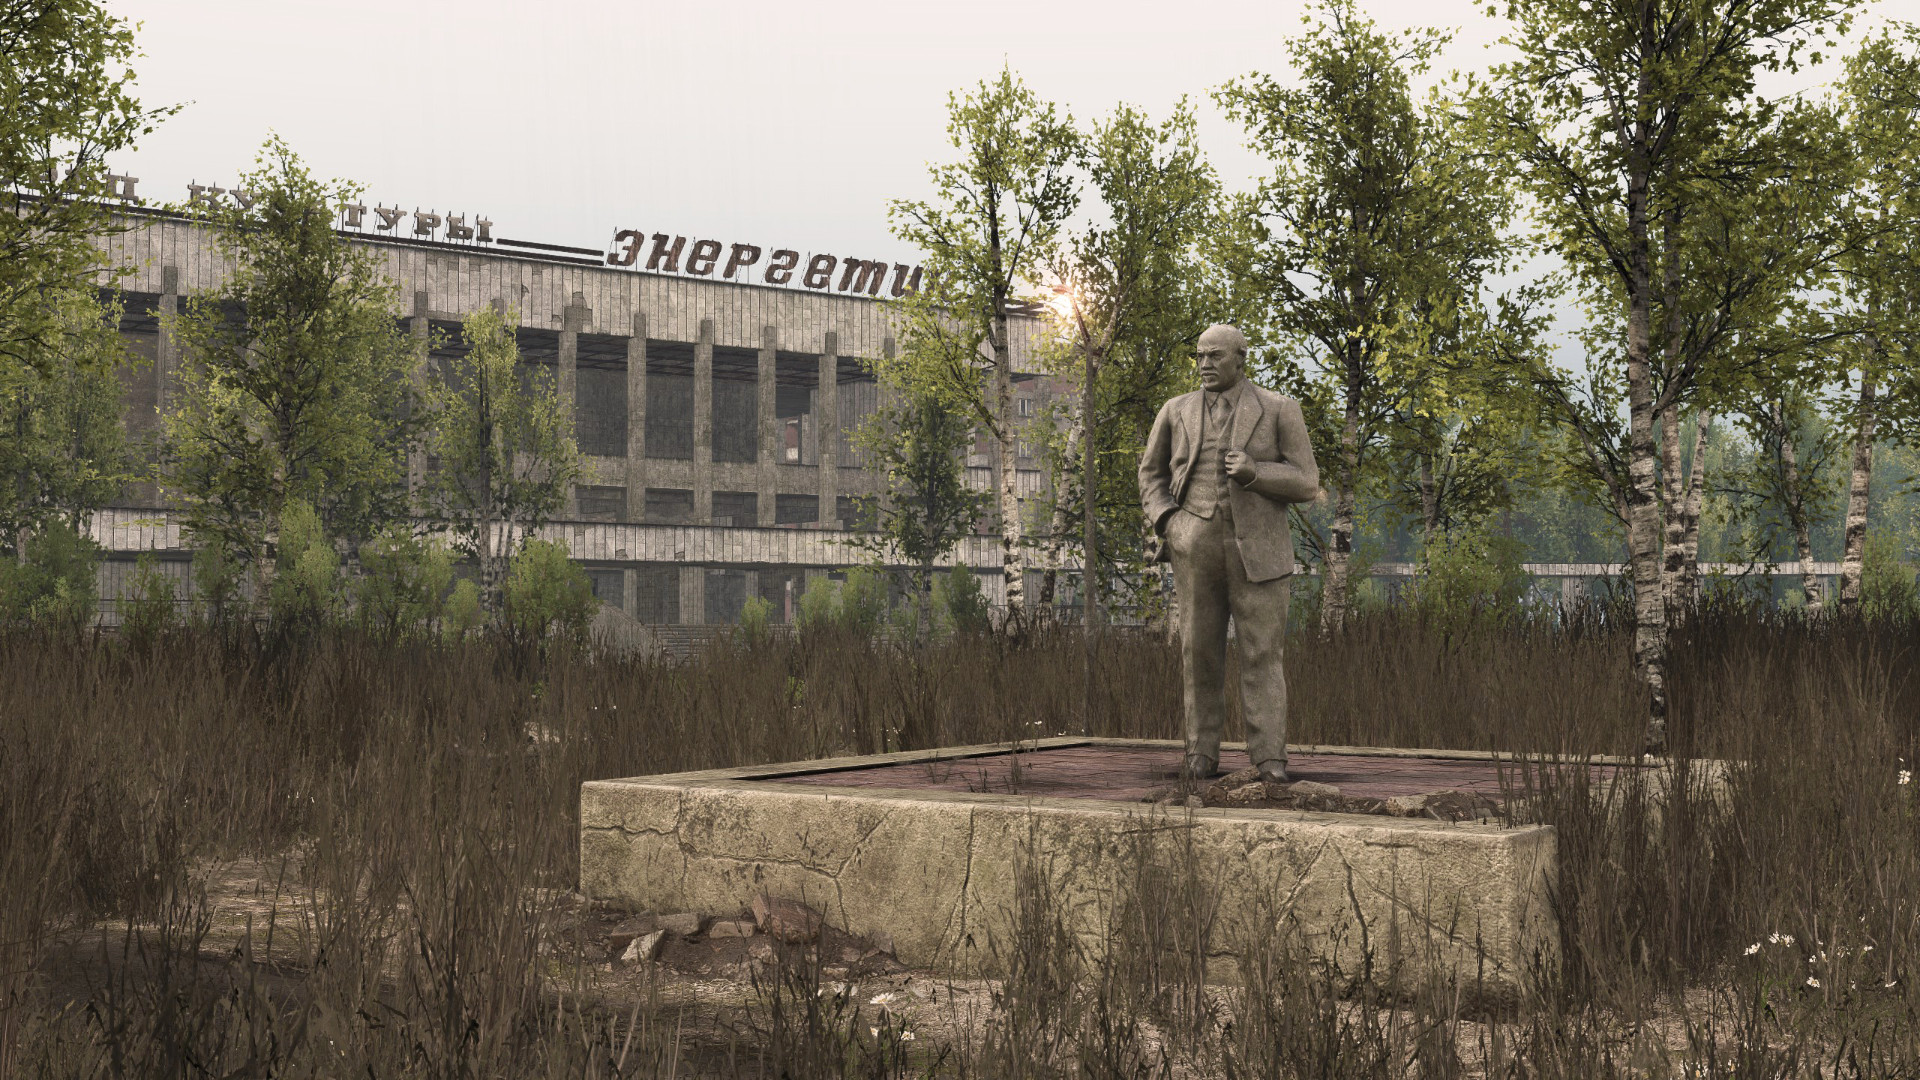 Chernobyl steam